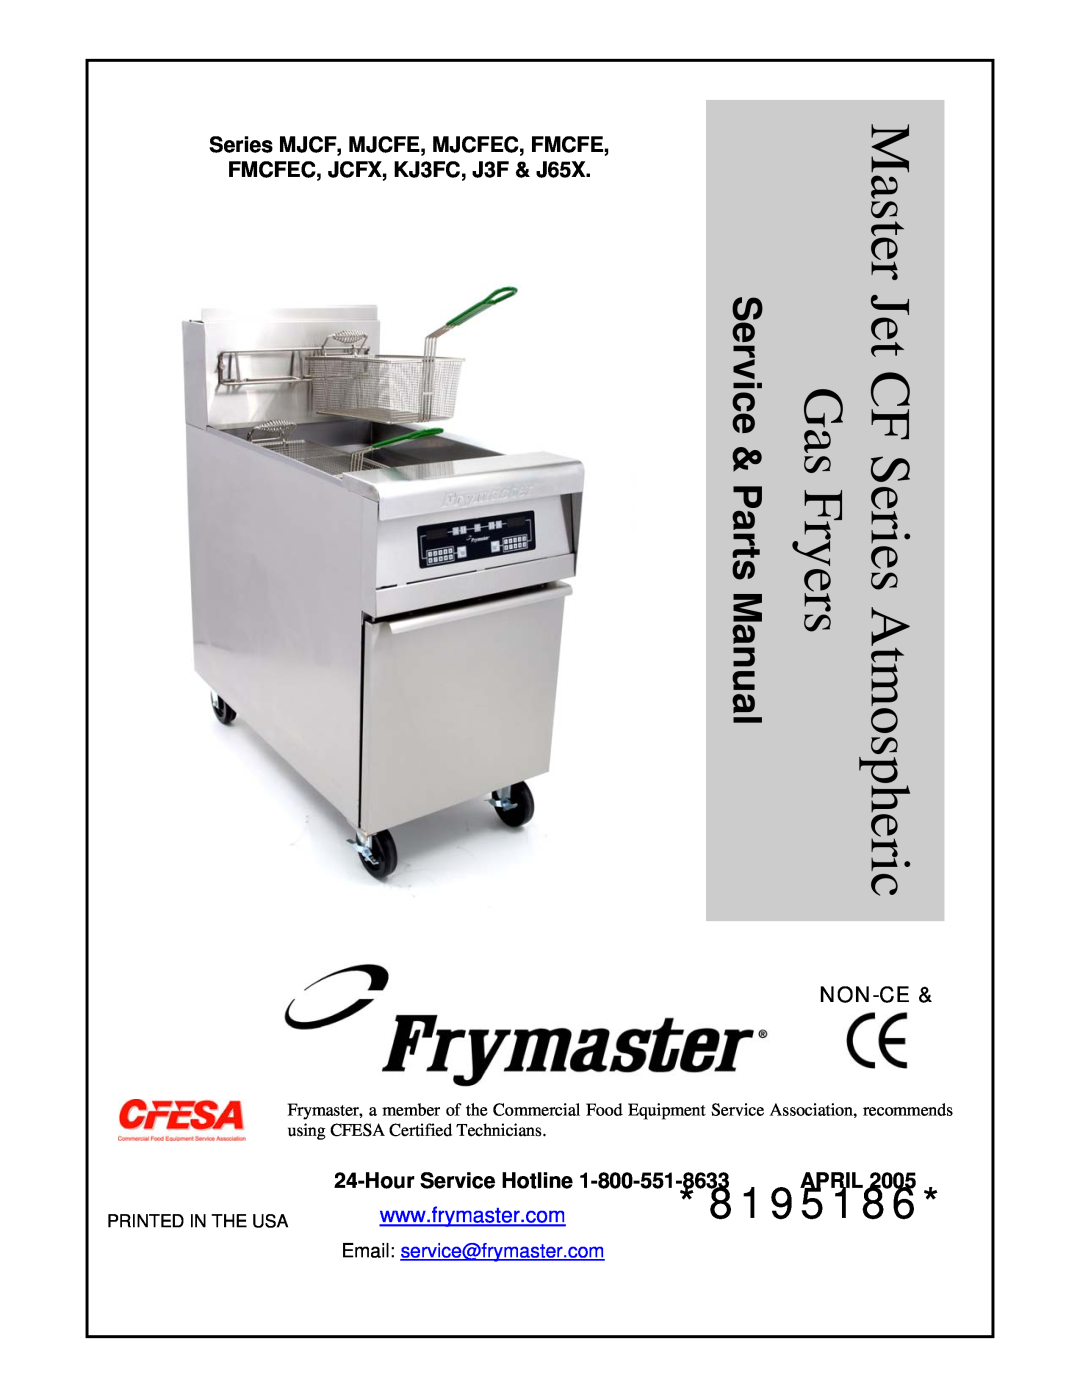 Frymaster manual 8195186, Series MJCF, MJCFE, MJCFEC, FMCFE, FMCFEC, JCFX, KJ3FC, J3F & J65X, Non-Ce 